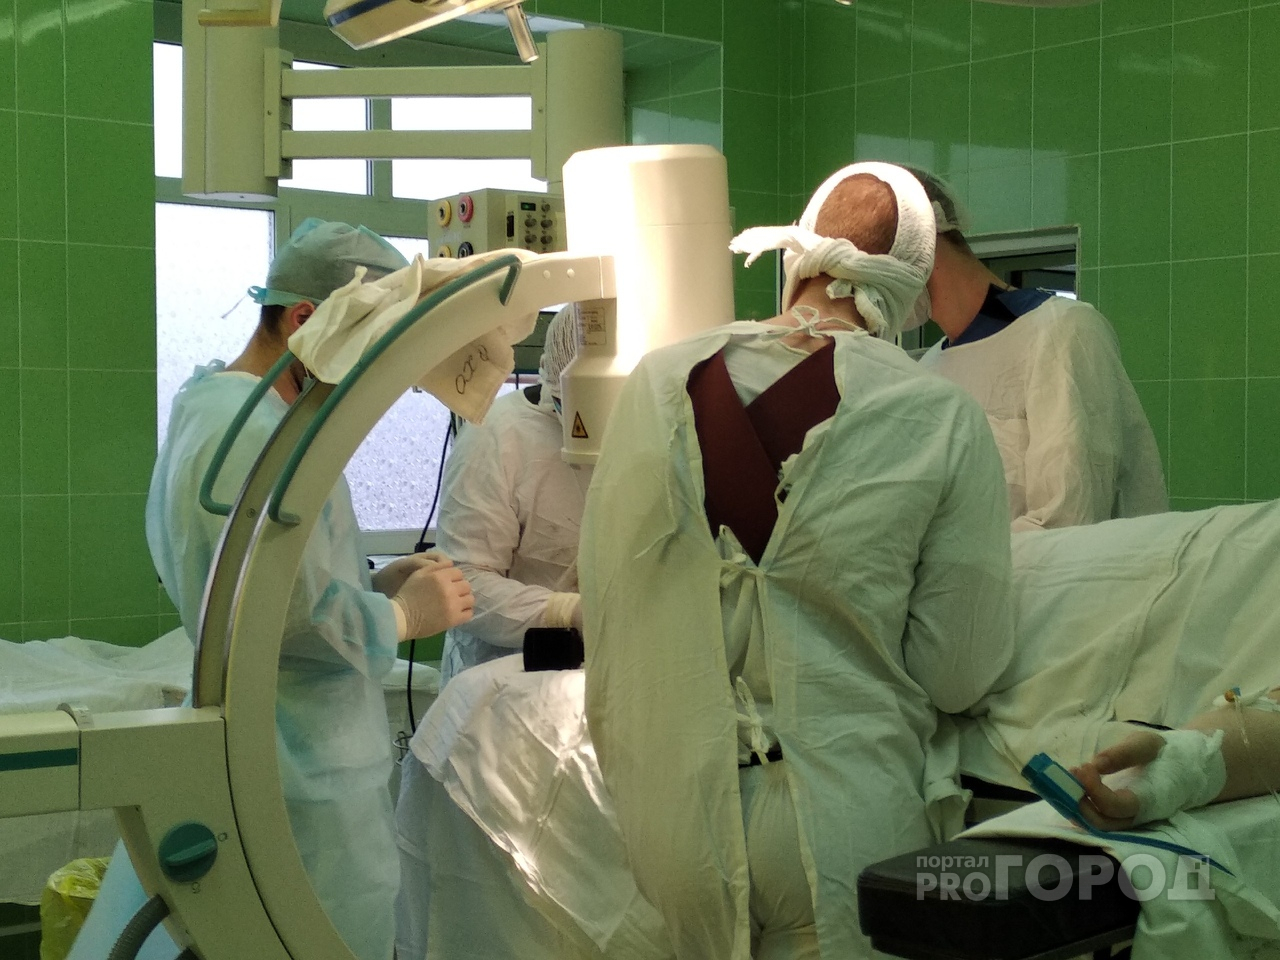 "Рак не болит": шокирующее разоблачение мифов об онкологии от врача из Ярославля